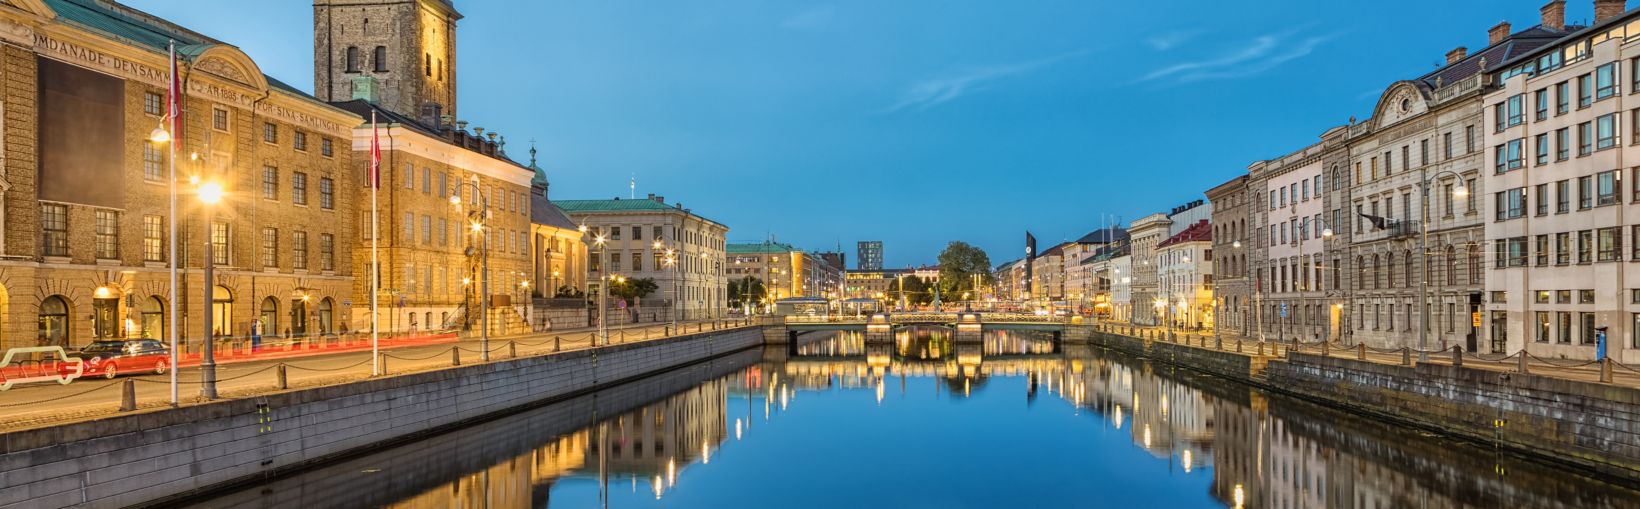 Paisaje urbano con el canal del gran puerto y la iglesia alemana (iglesia de Cristina o Christinæ kyrka) al atardecer en Gotemburgo (Suecia)